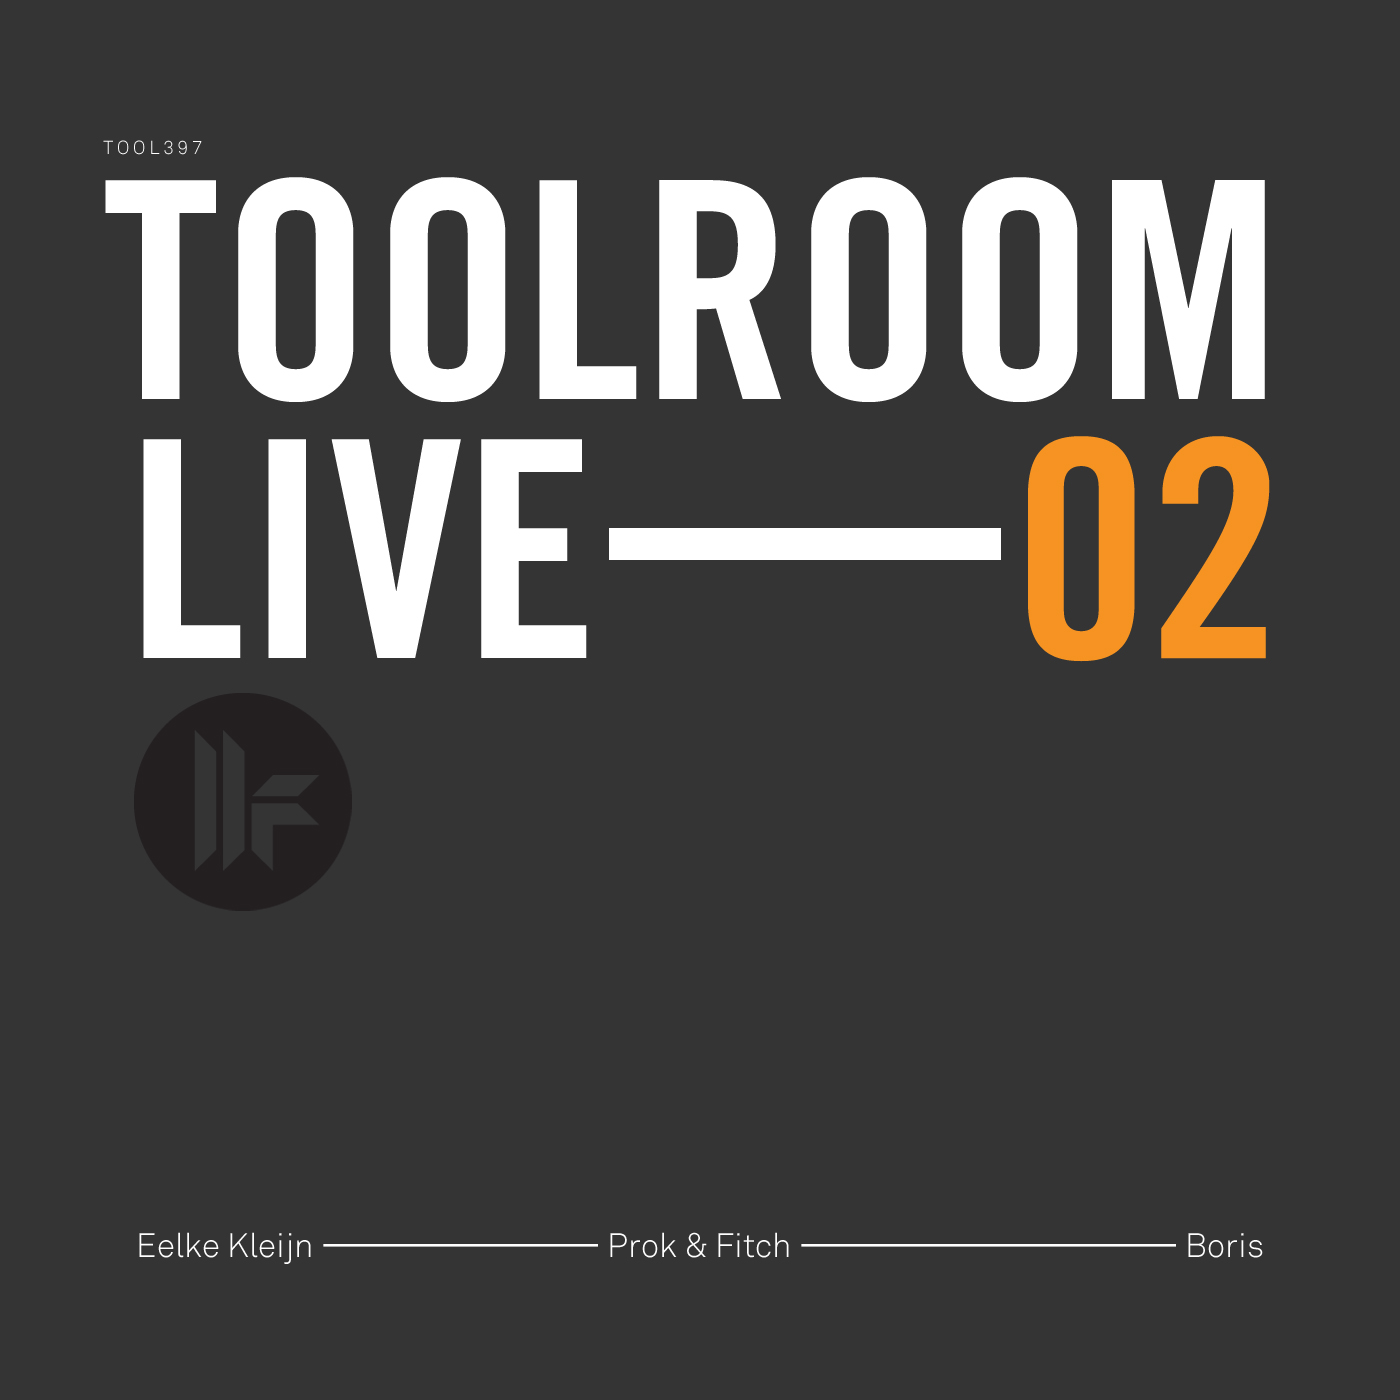 Toolroom Live 02: Eelke Kleijn